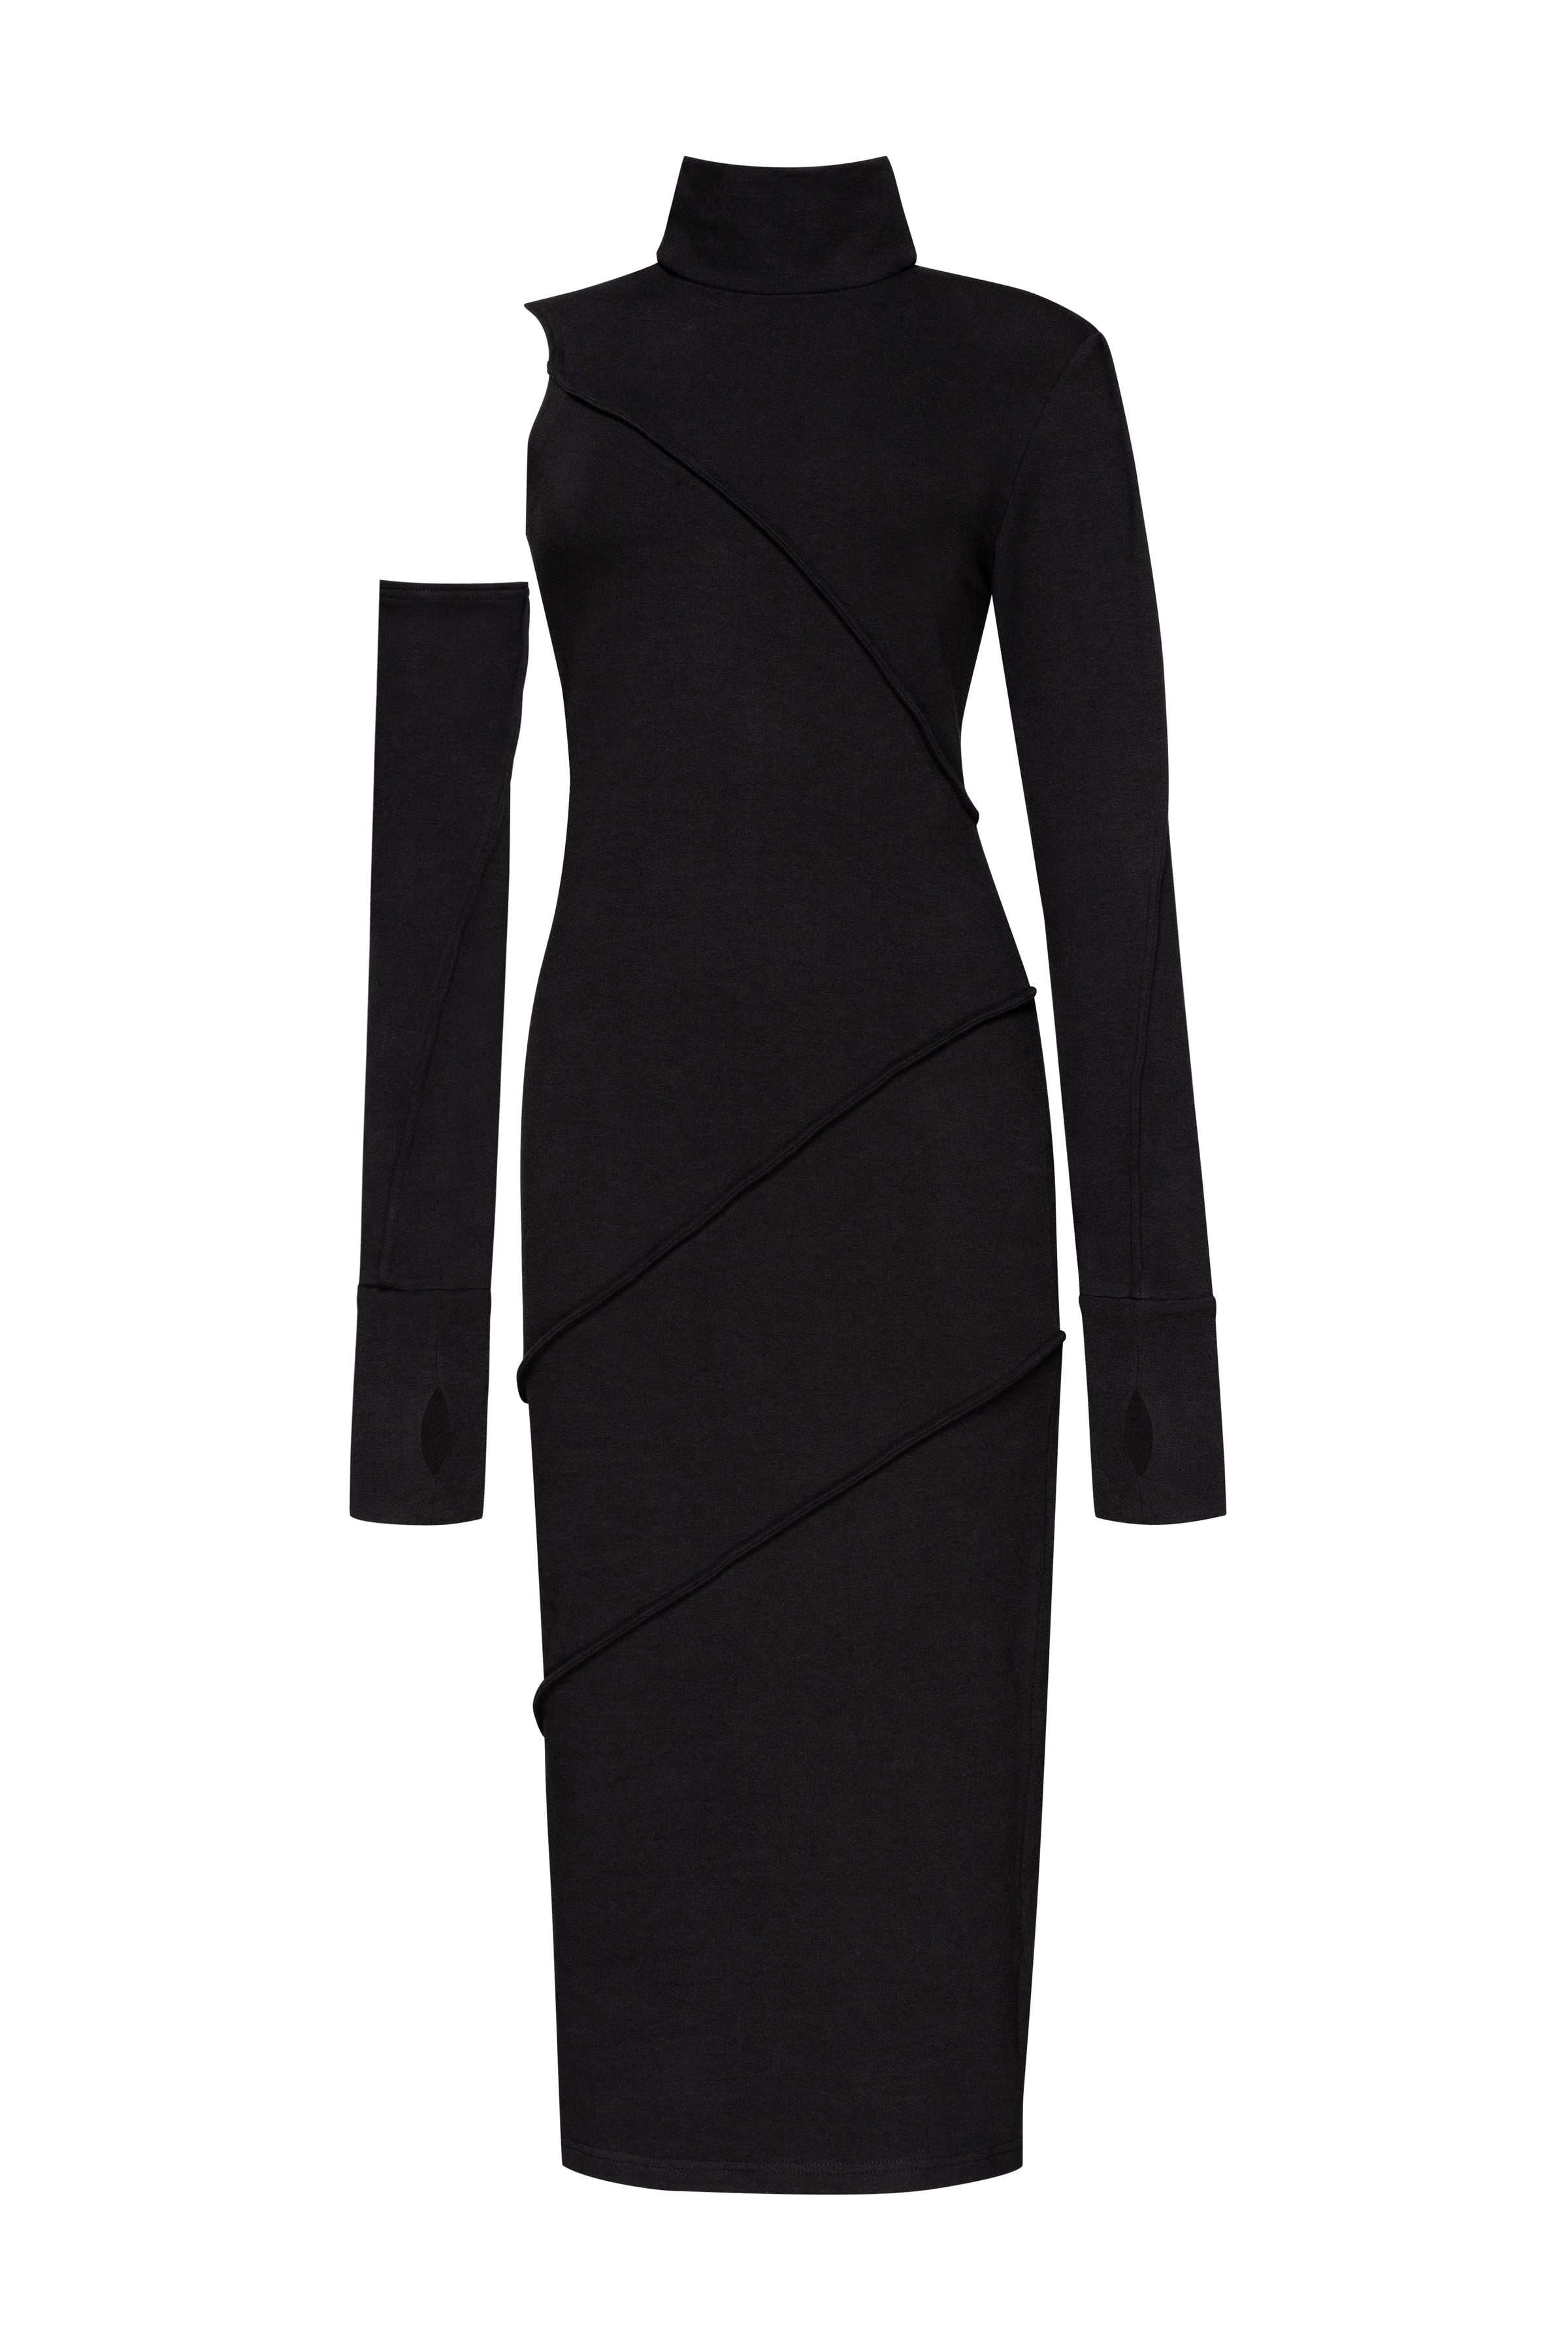 Minimalistic black dress – MDNT45 | mdnt45.com